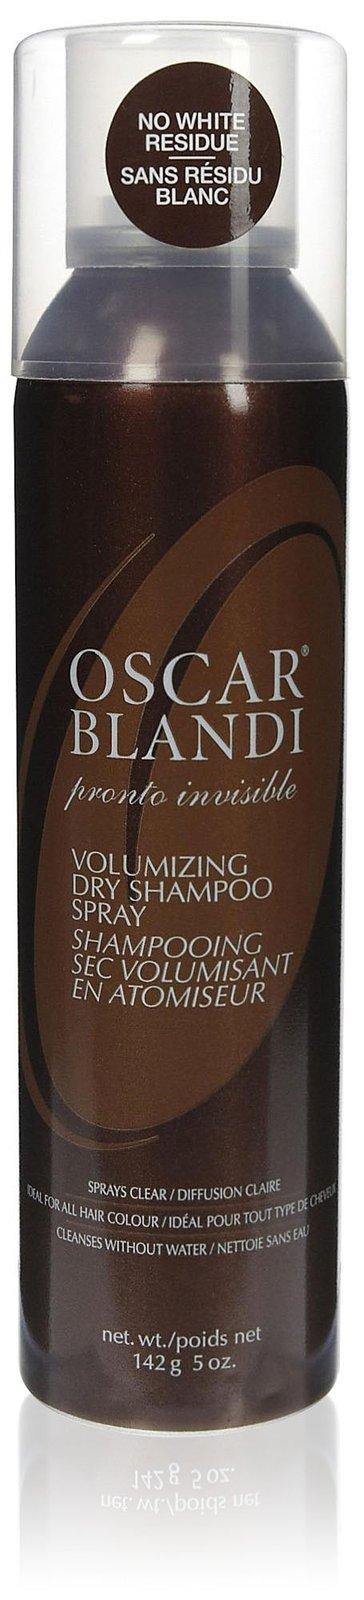 Oscar Blandi Pronto Invisible Dry Shampoo Spray